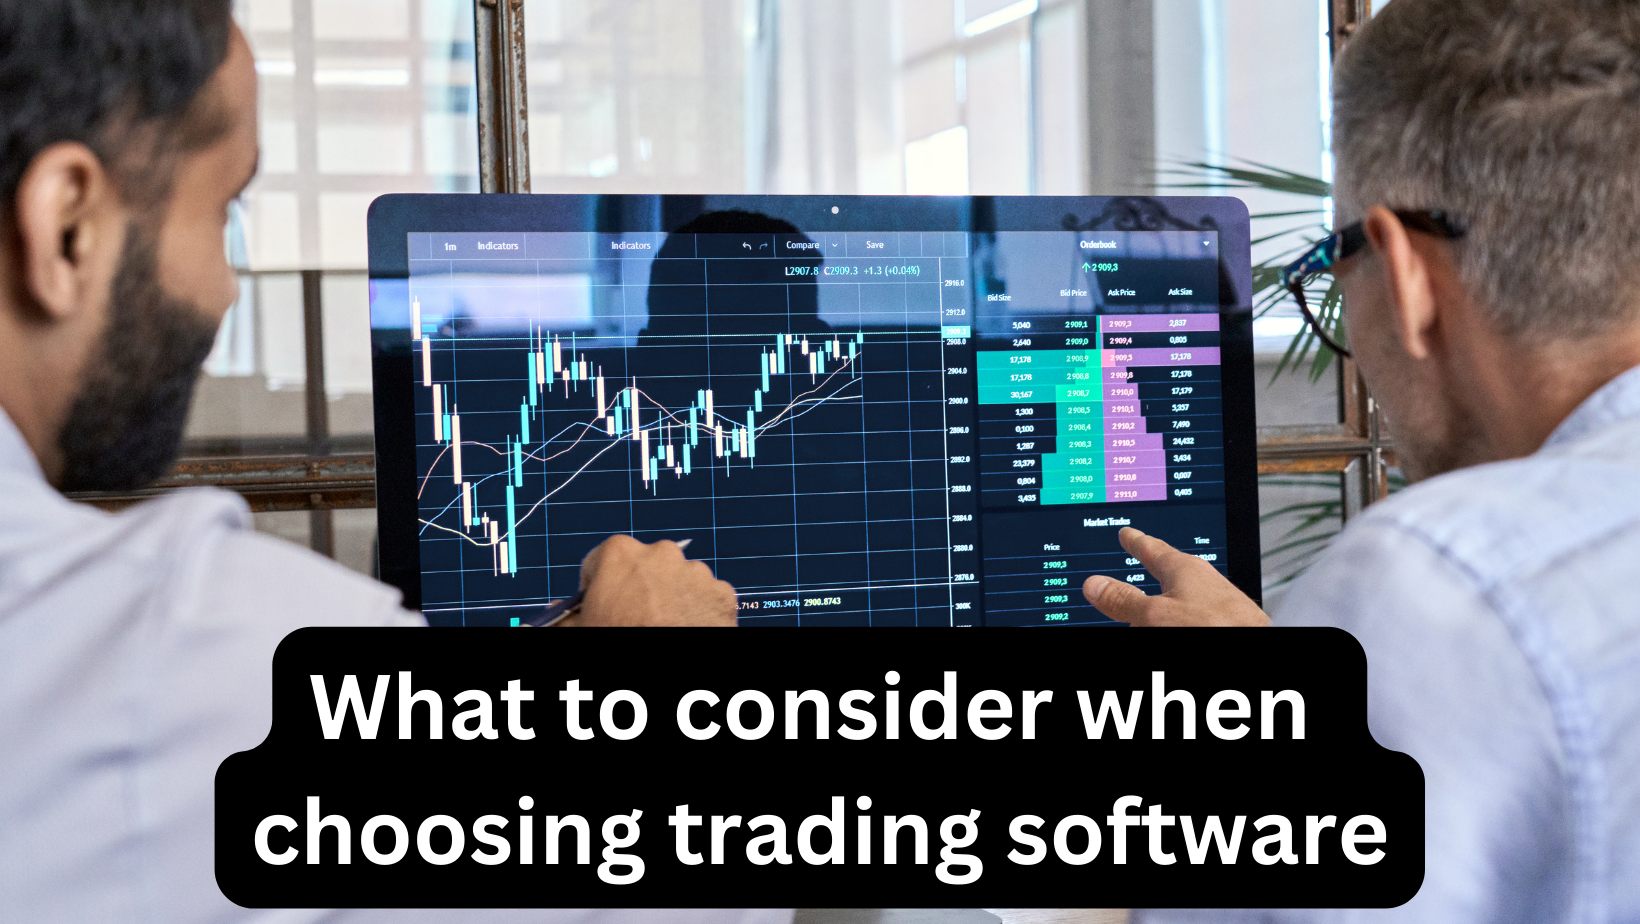 Ce qu'il faut considérer lors du choix d'un logiciel de trading